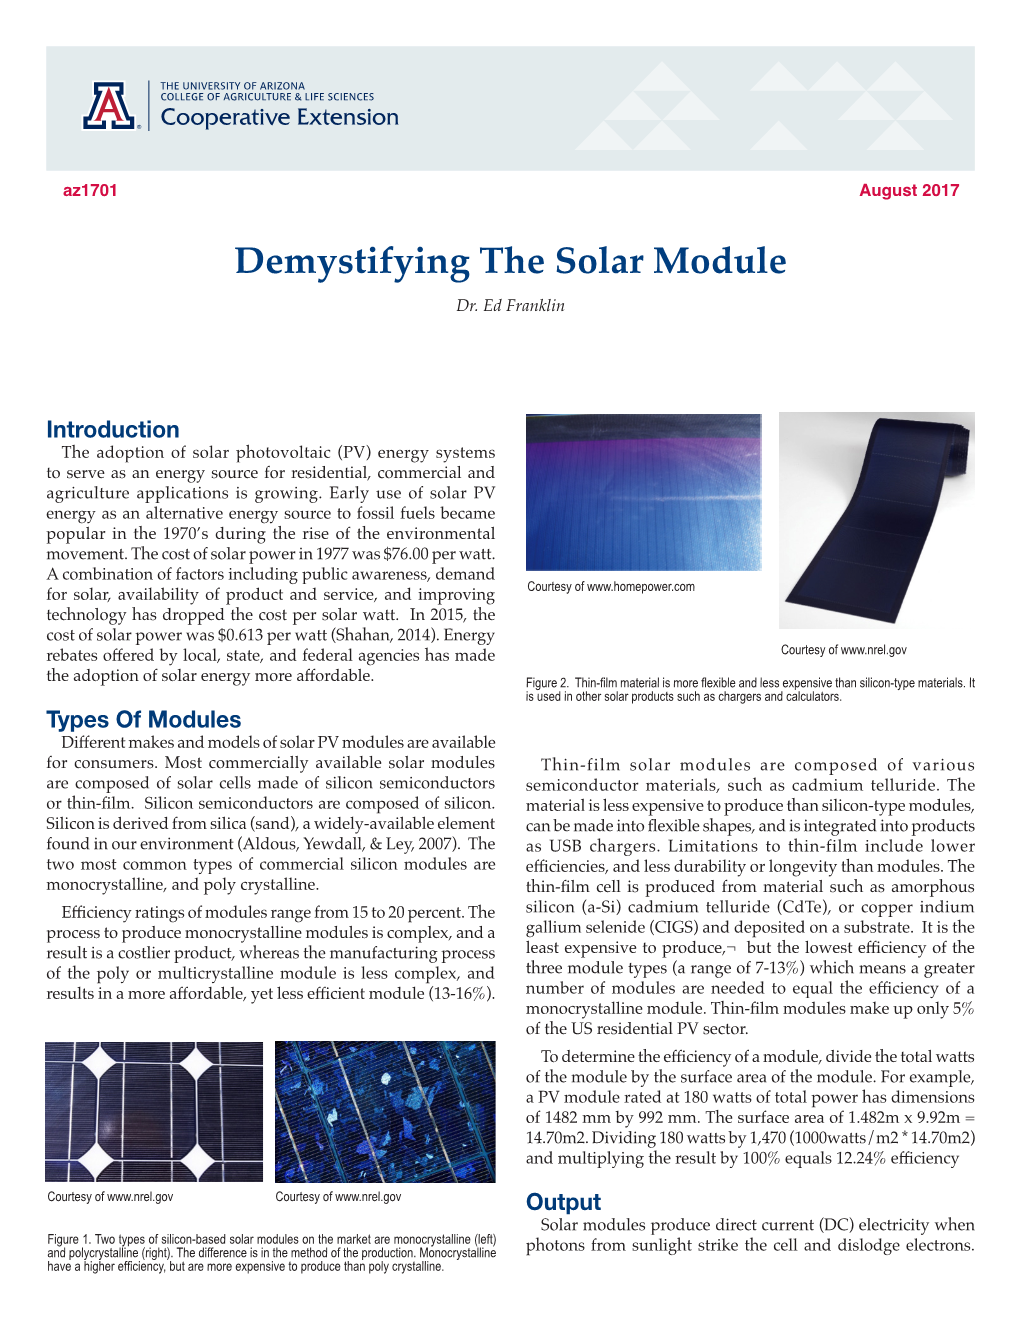 Demystifying the Solar Module Dr